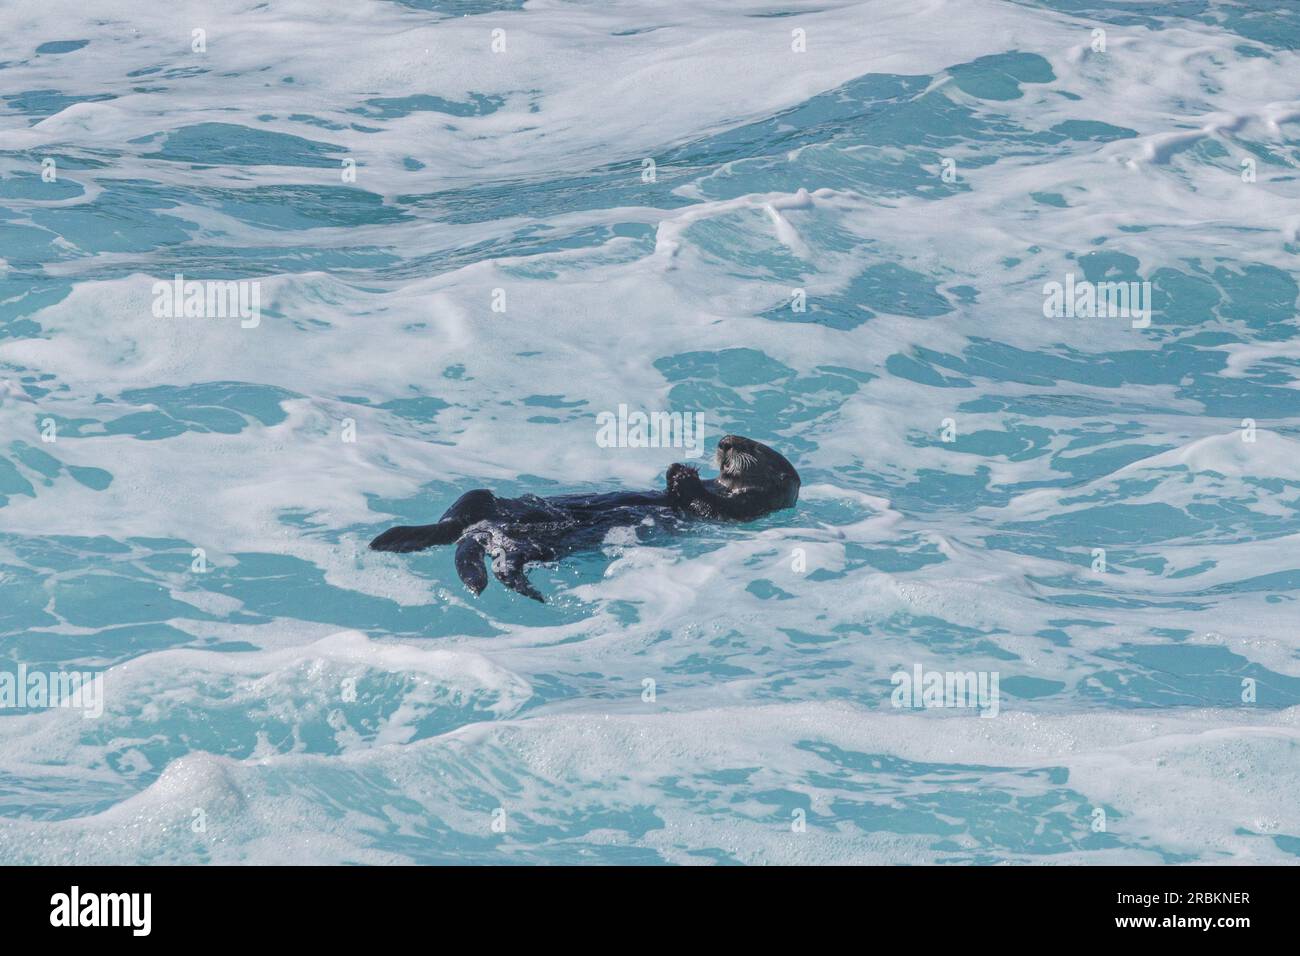 Loutre de mer (Enhydra lutris), se nourrissant, flottant sur le dos dans des embruns violents, USA, Californie, Pazific Coast Highway Banque D'Images